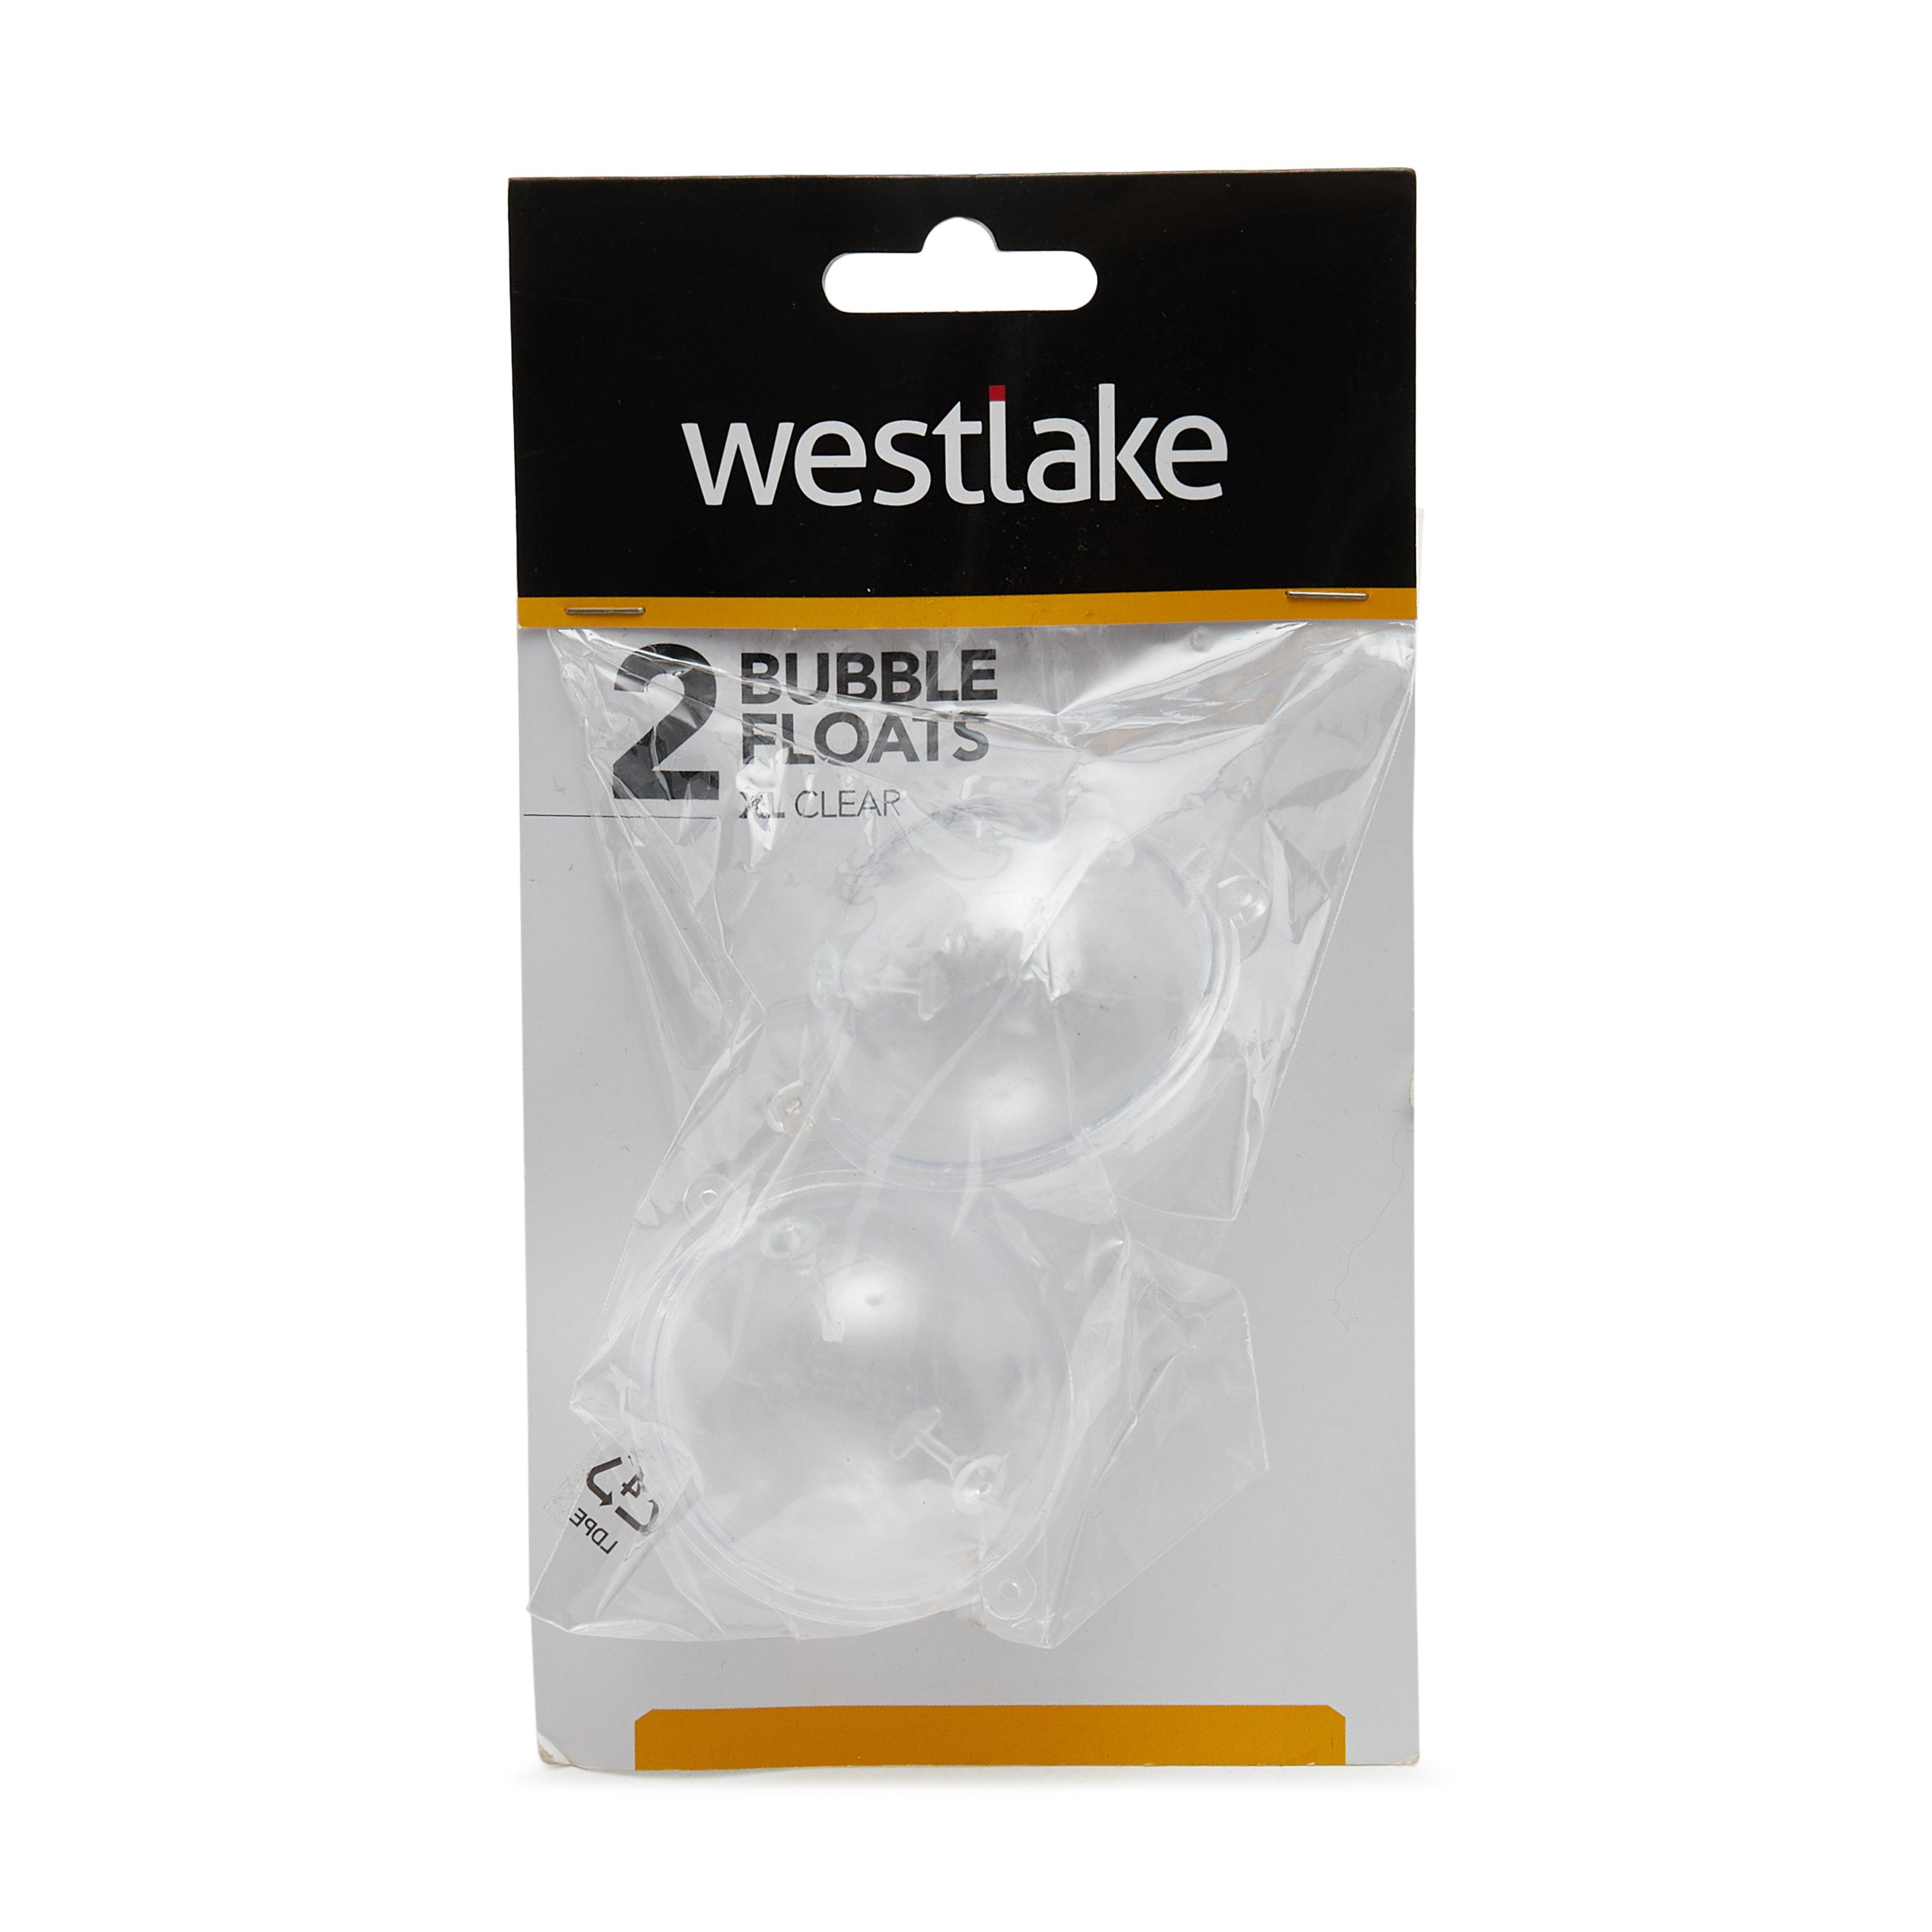 Westlake 2Pk Bubble Float Xl Clear Review